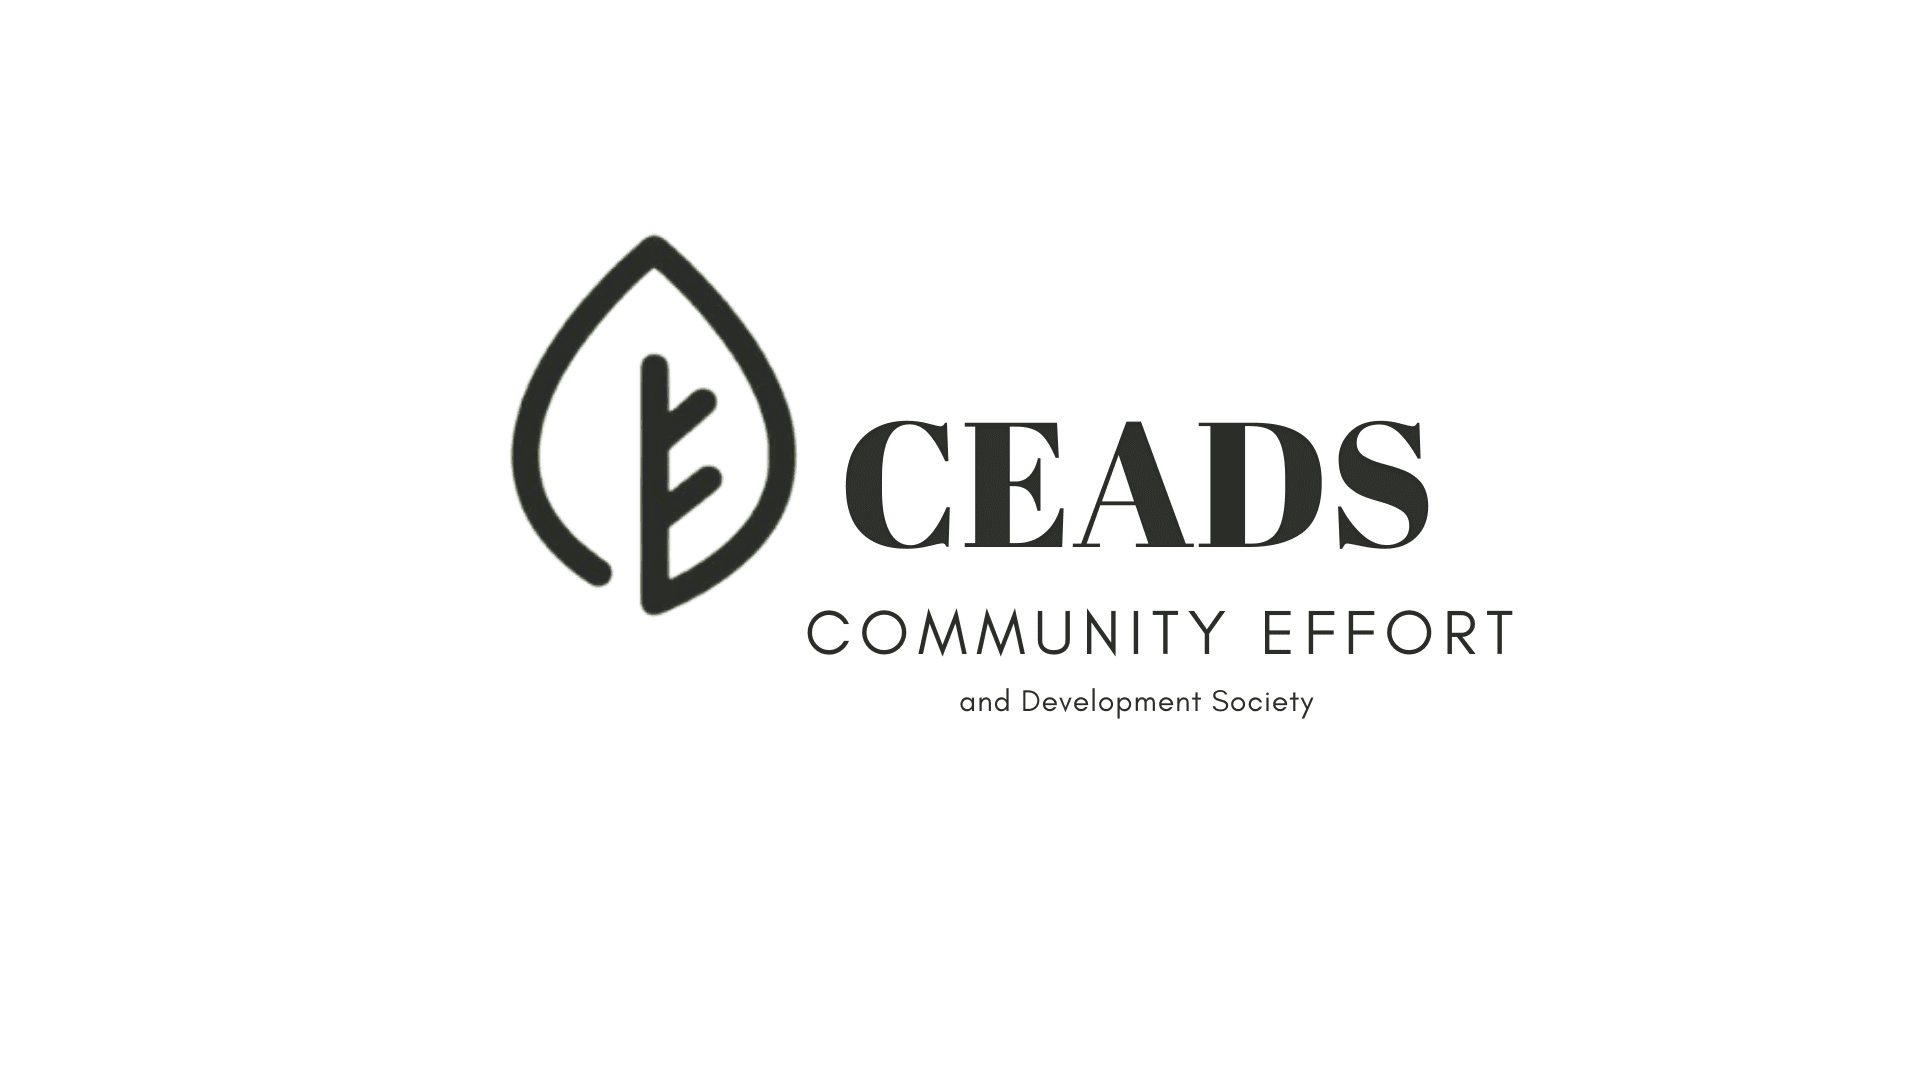 community effort and development society logo